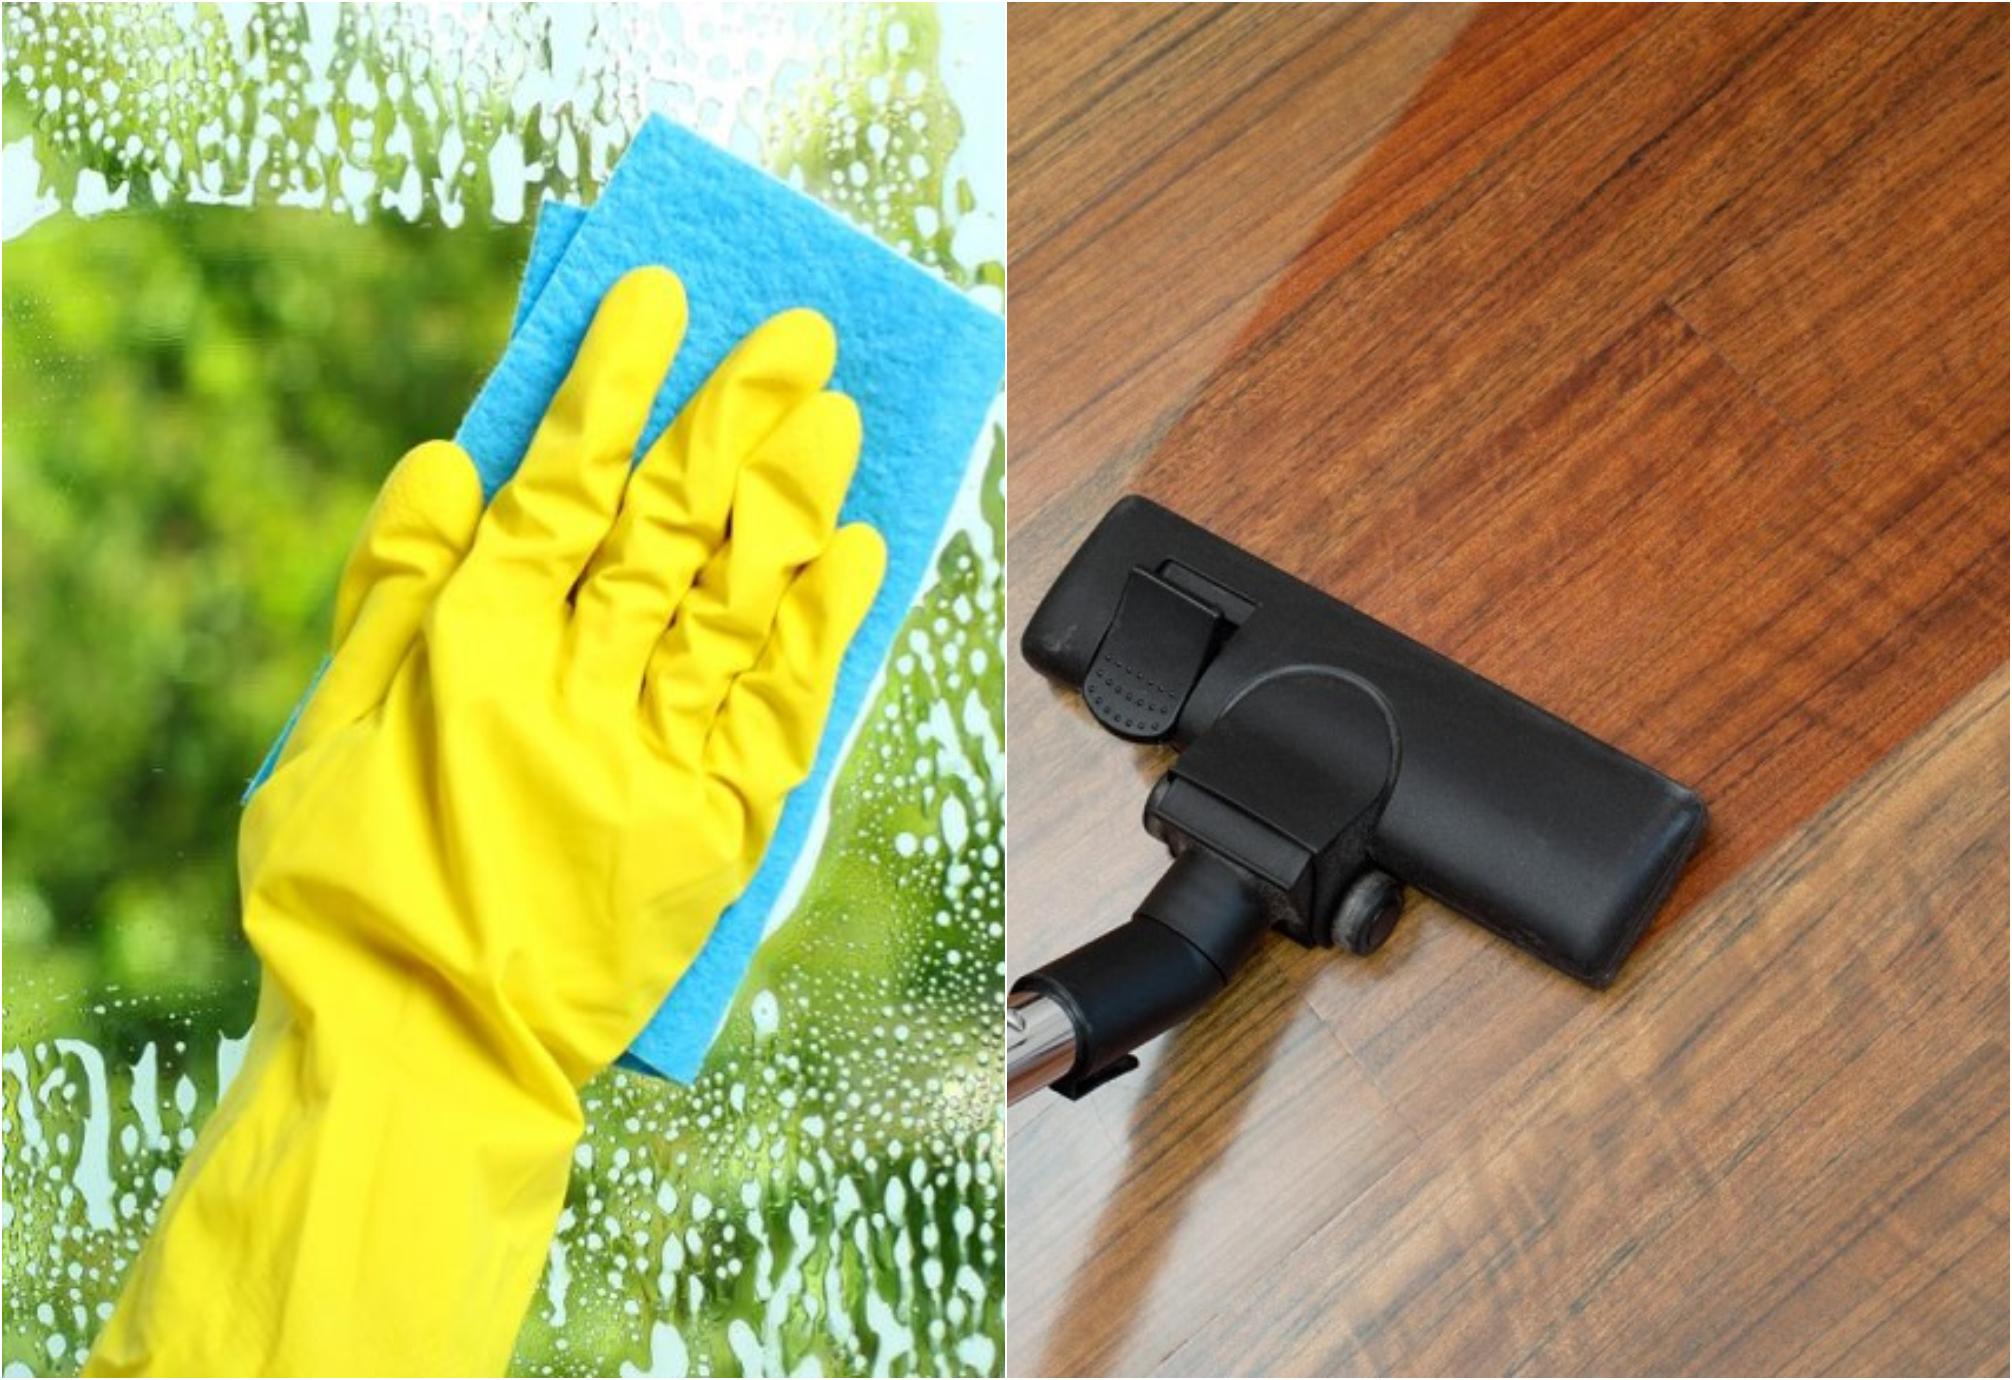 Βρώμικα τζάμια σκόνη και βουλωμένες αποχετεύσεις – Δείτε 8 έξυπνα tips για να καθαρίσετε όλο το σπίτι εύκολα και γρήγορα